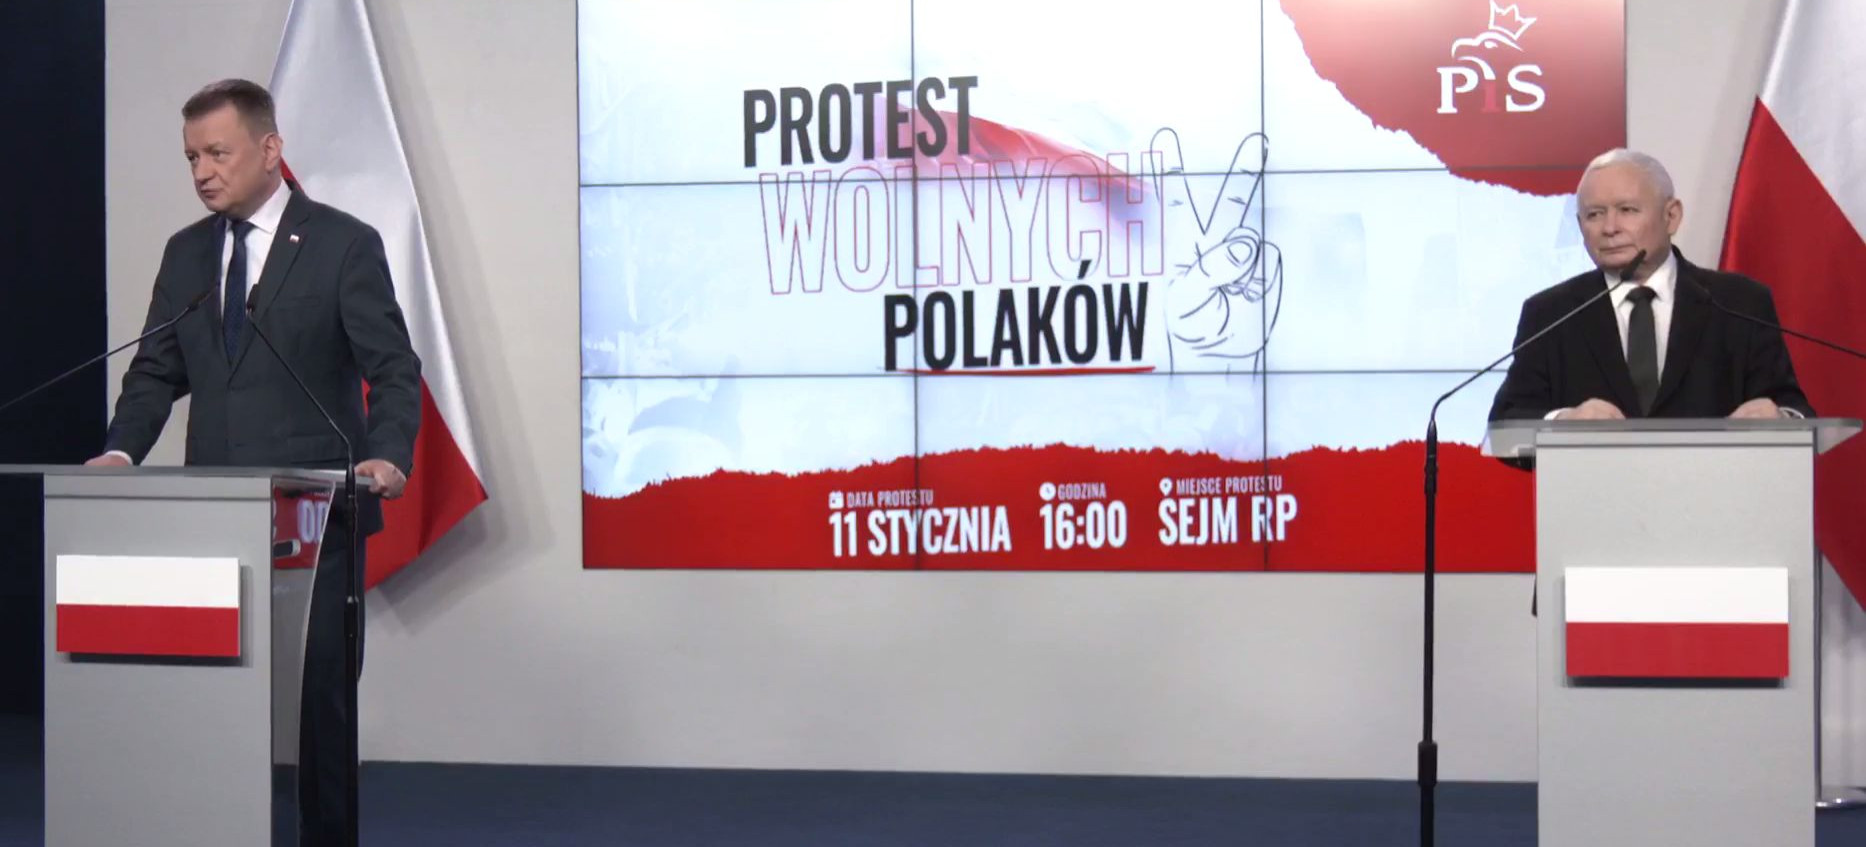 11 stycznia w Warszawie. Protest wolnych Polaków! (VIDEO)